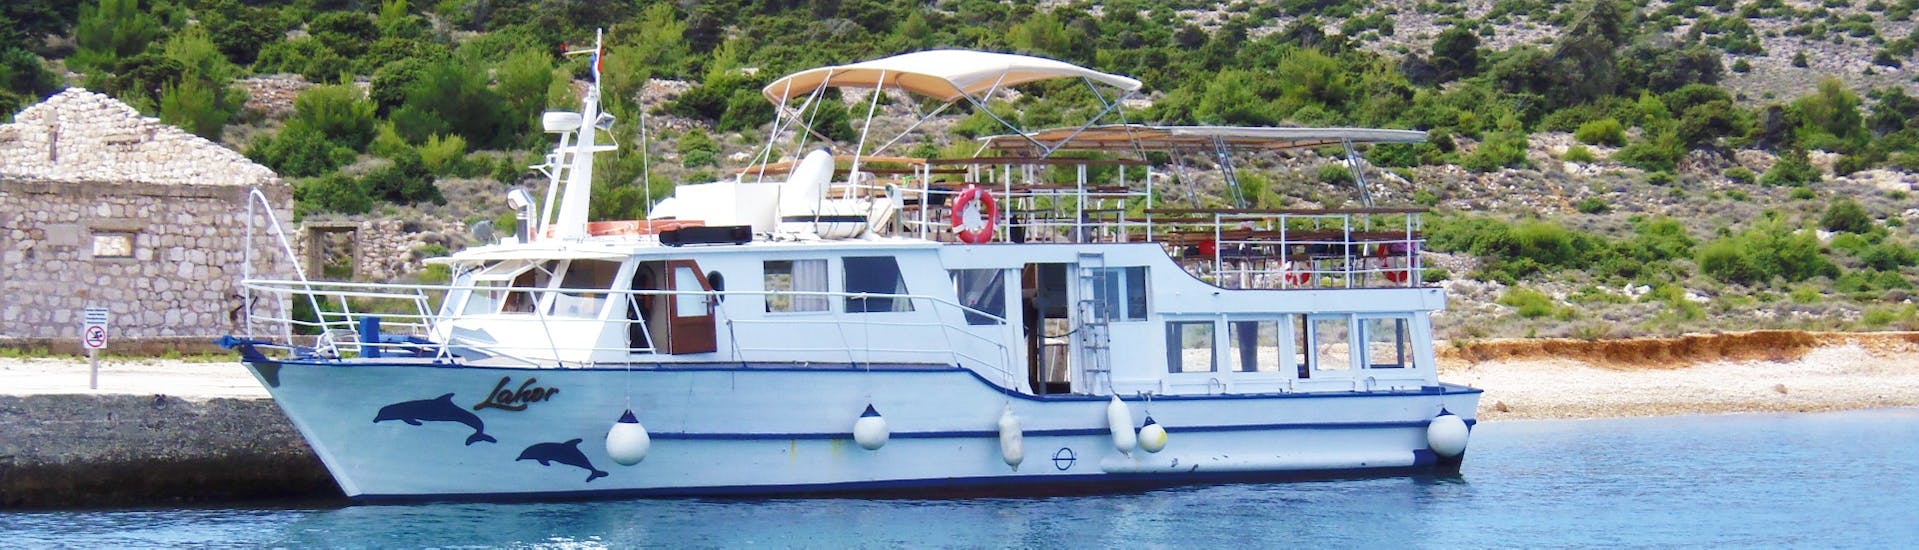 L'Notre bateau confortable est ce dont vous avez besoin pour une Excursion en bateau de Punat à l'île de Plavnik avec Lahor Island Excursions Punat est prête à commencer.